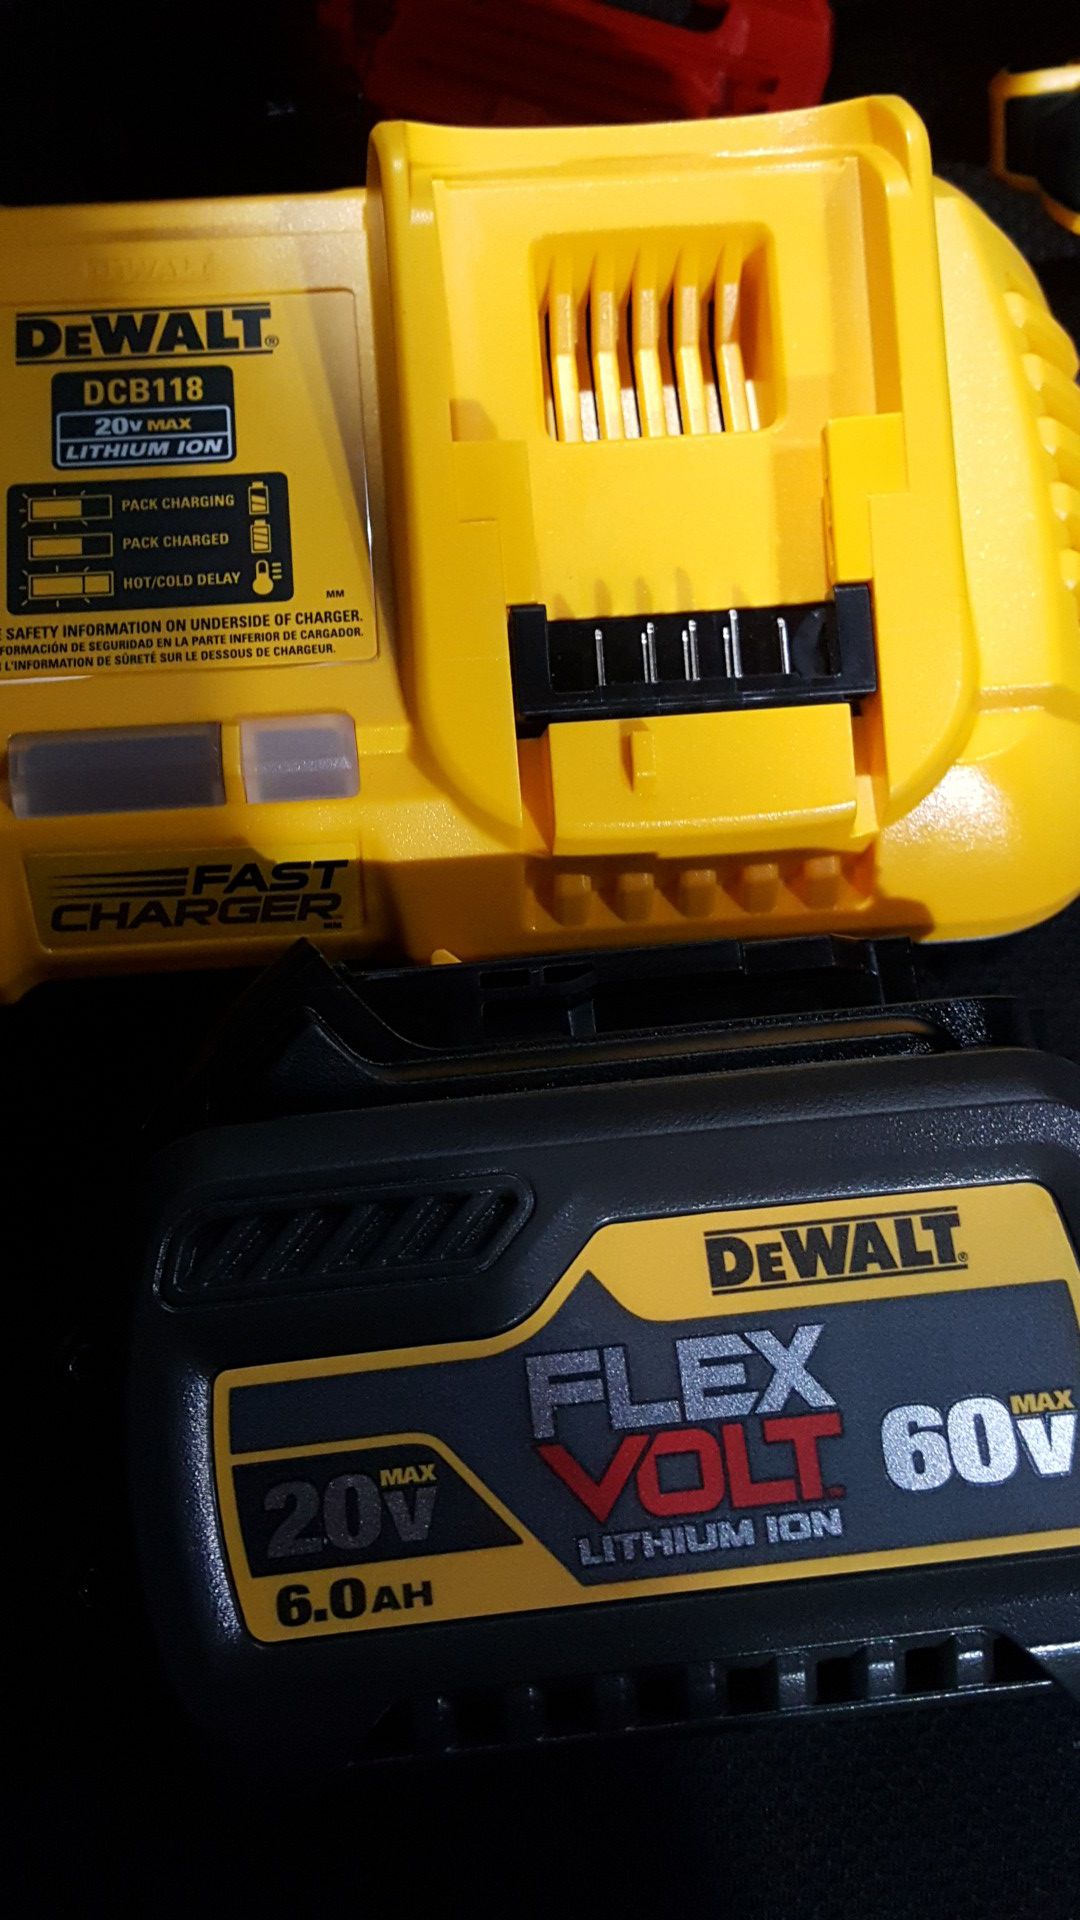 Dewalt flex volt 60v battery and fast charger